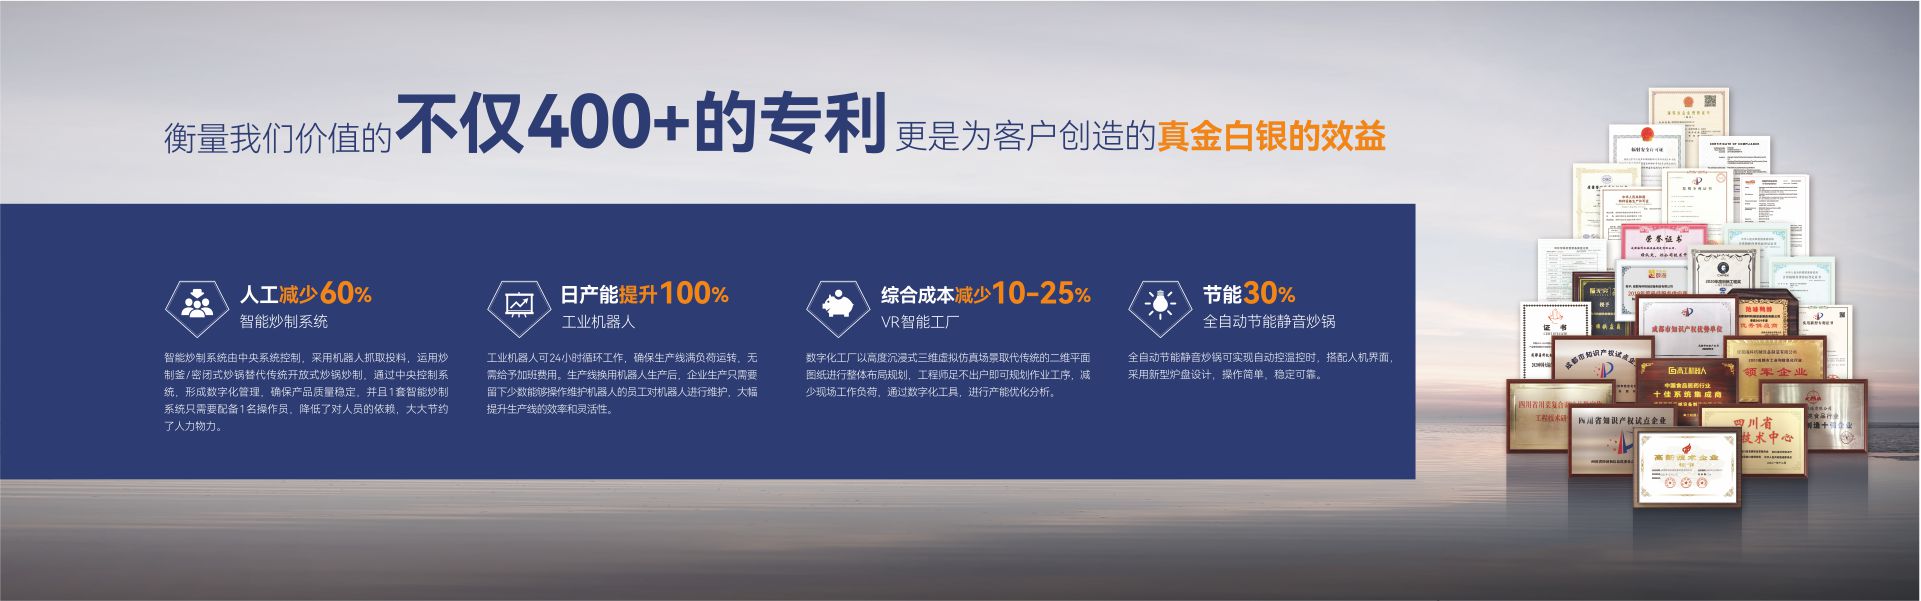 关于当前产品3199ceo集团网·(中国)官方网站的成功案例等相关图片